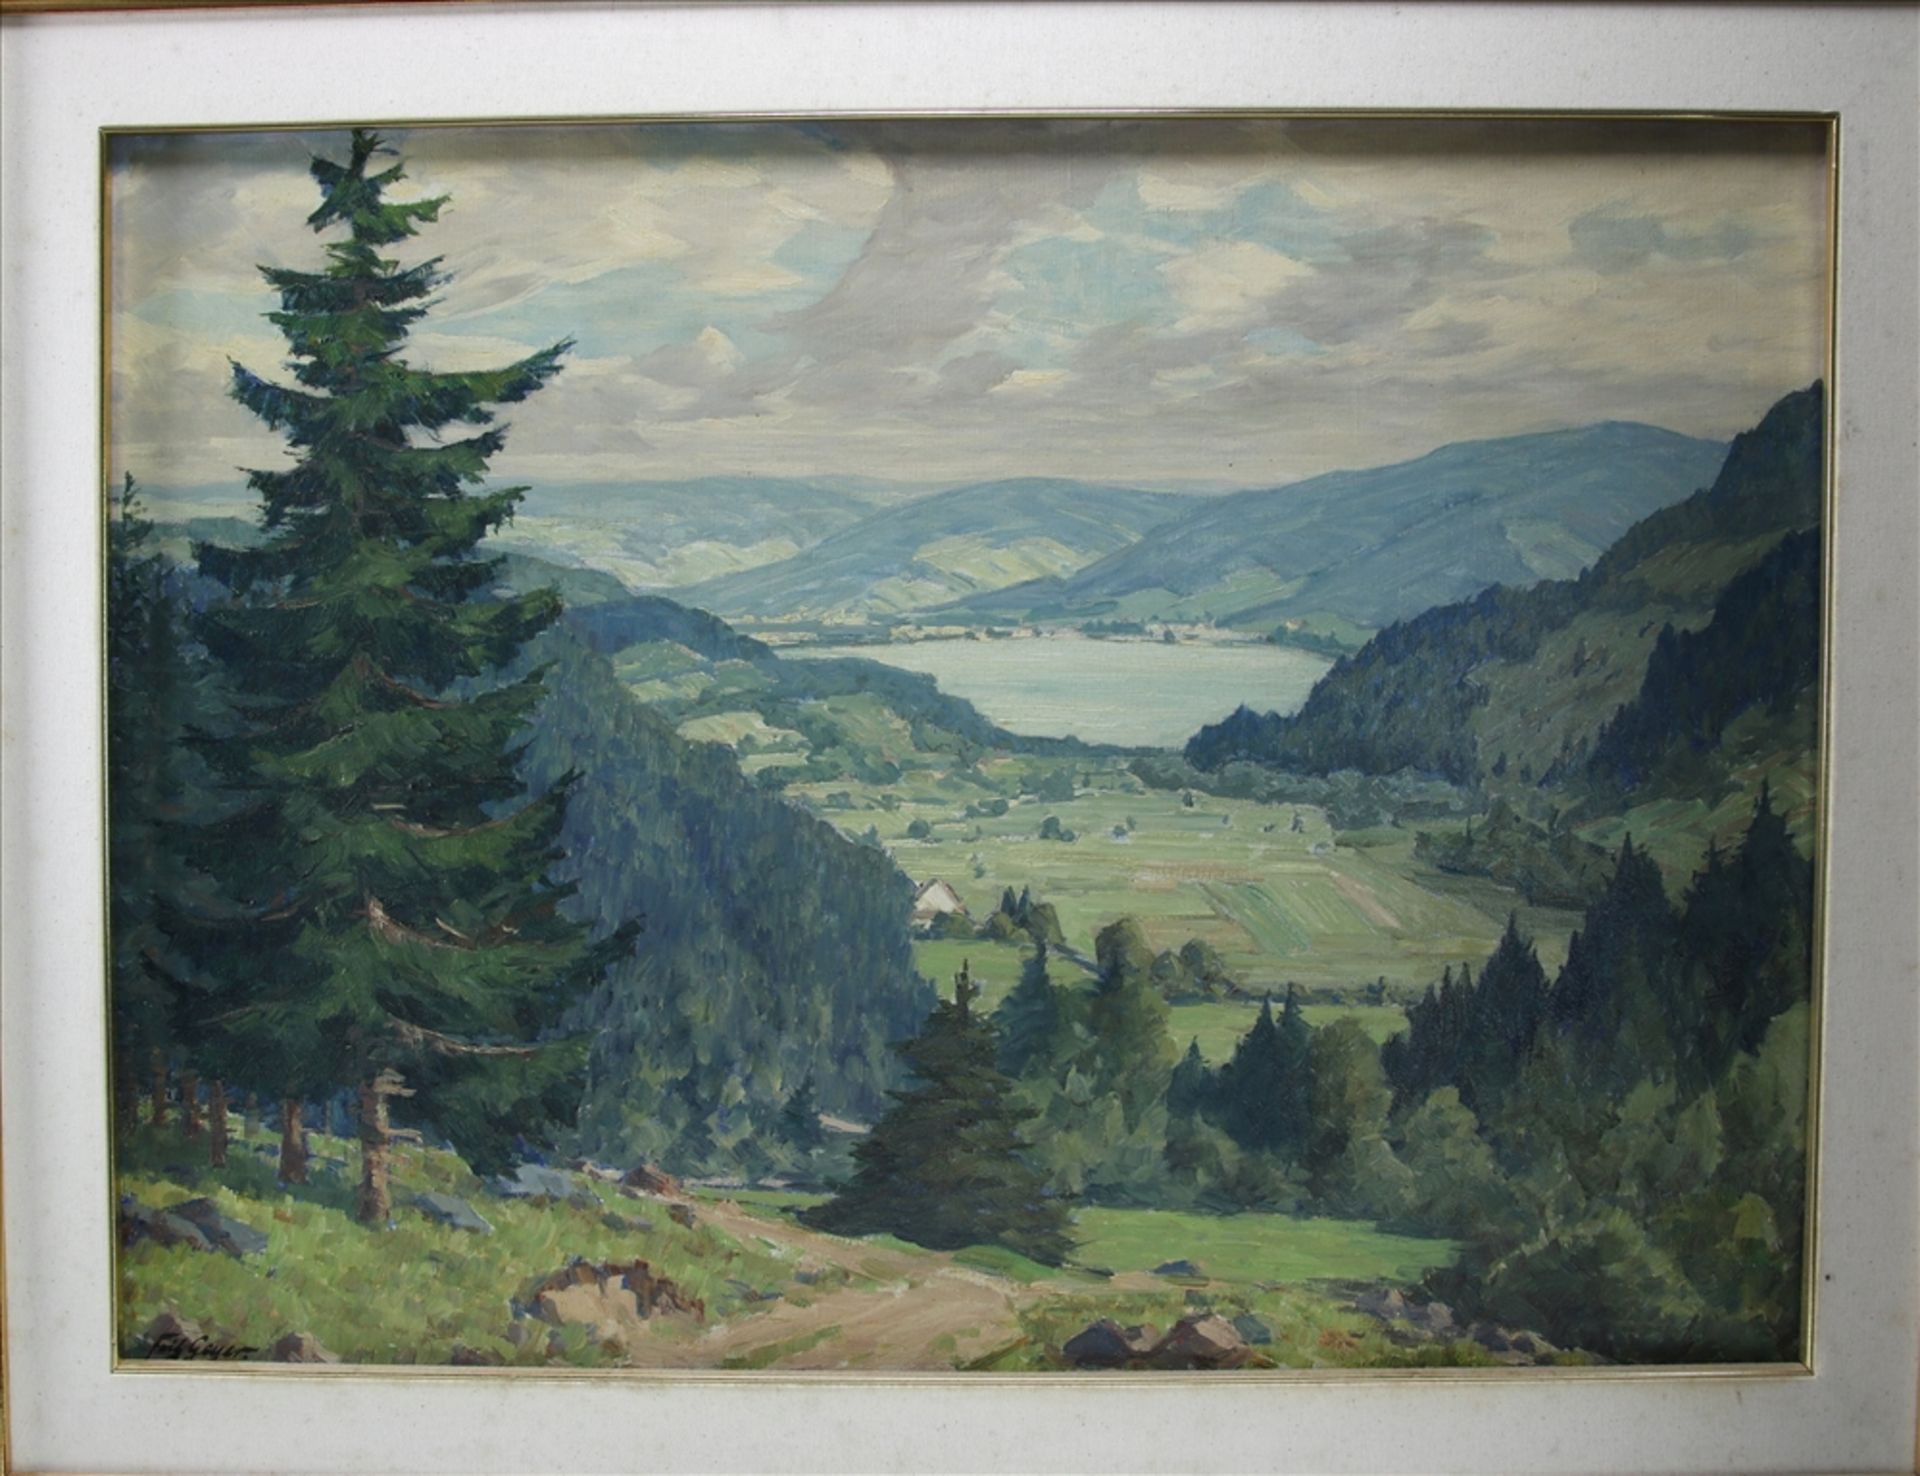 Geyer, Fritz 1875 Nürnberg - 1947 Tübingen. Blick auf den Schluchsee. Öl auf Leinwand. Unten links